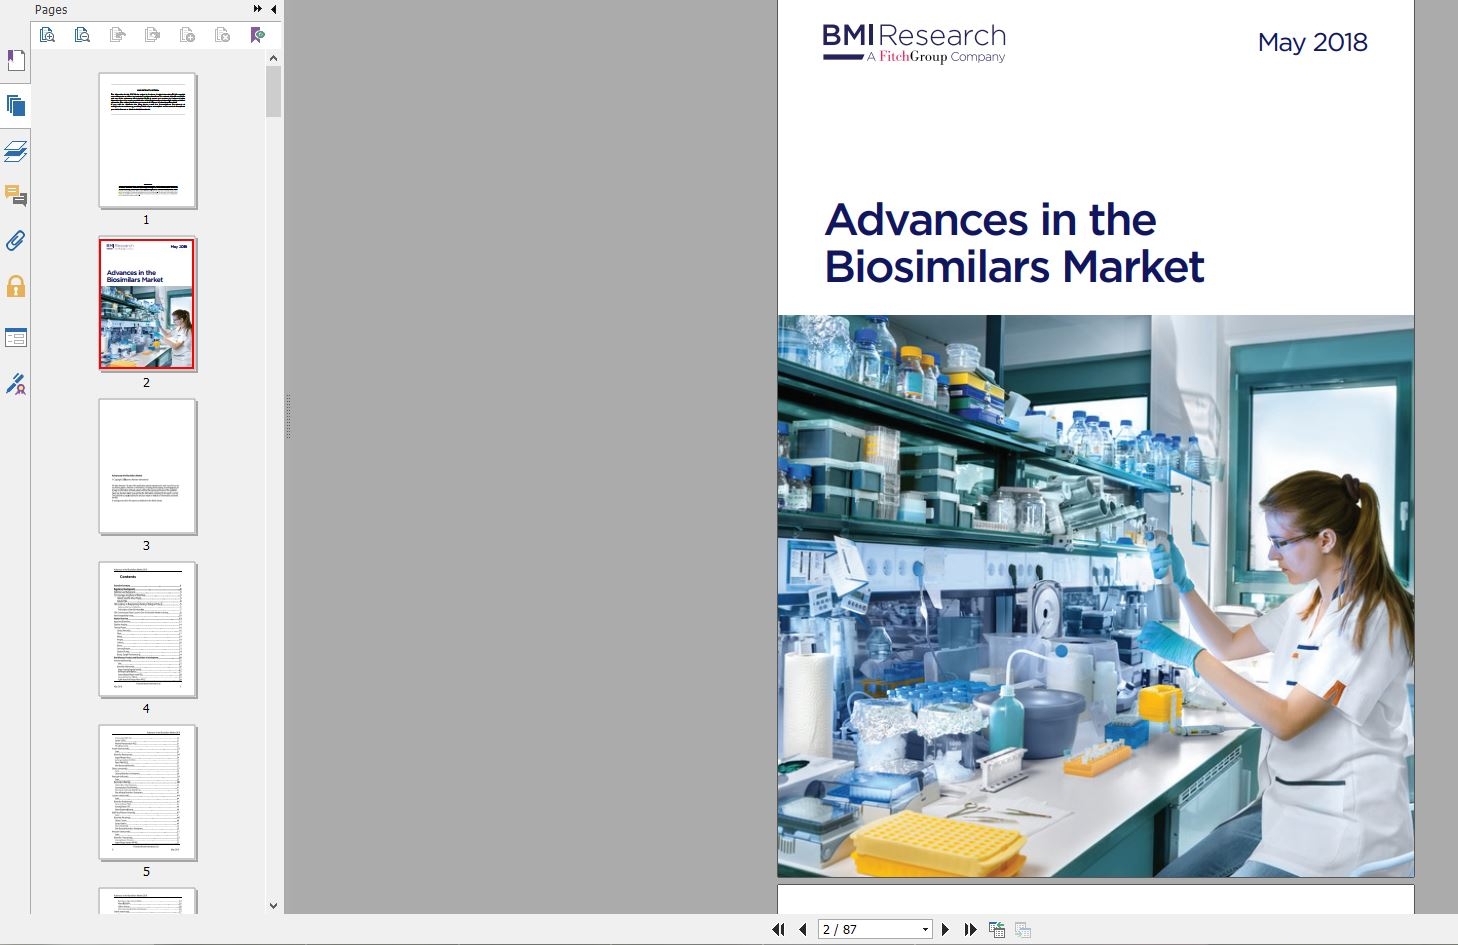 دانلود ریپورت Advances in the Biosimilars Market از بیزینس مانیتور خرید گزارش پیشرفت در بازار Biosimilars خرید Report از Business Monitor دریافت گزارشات BMI گیگاپیپر